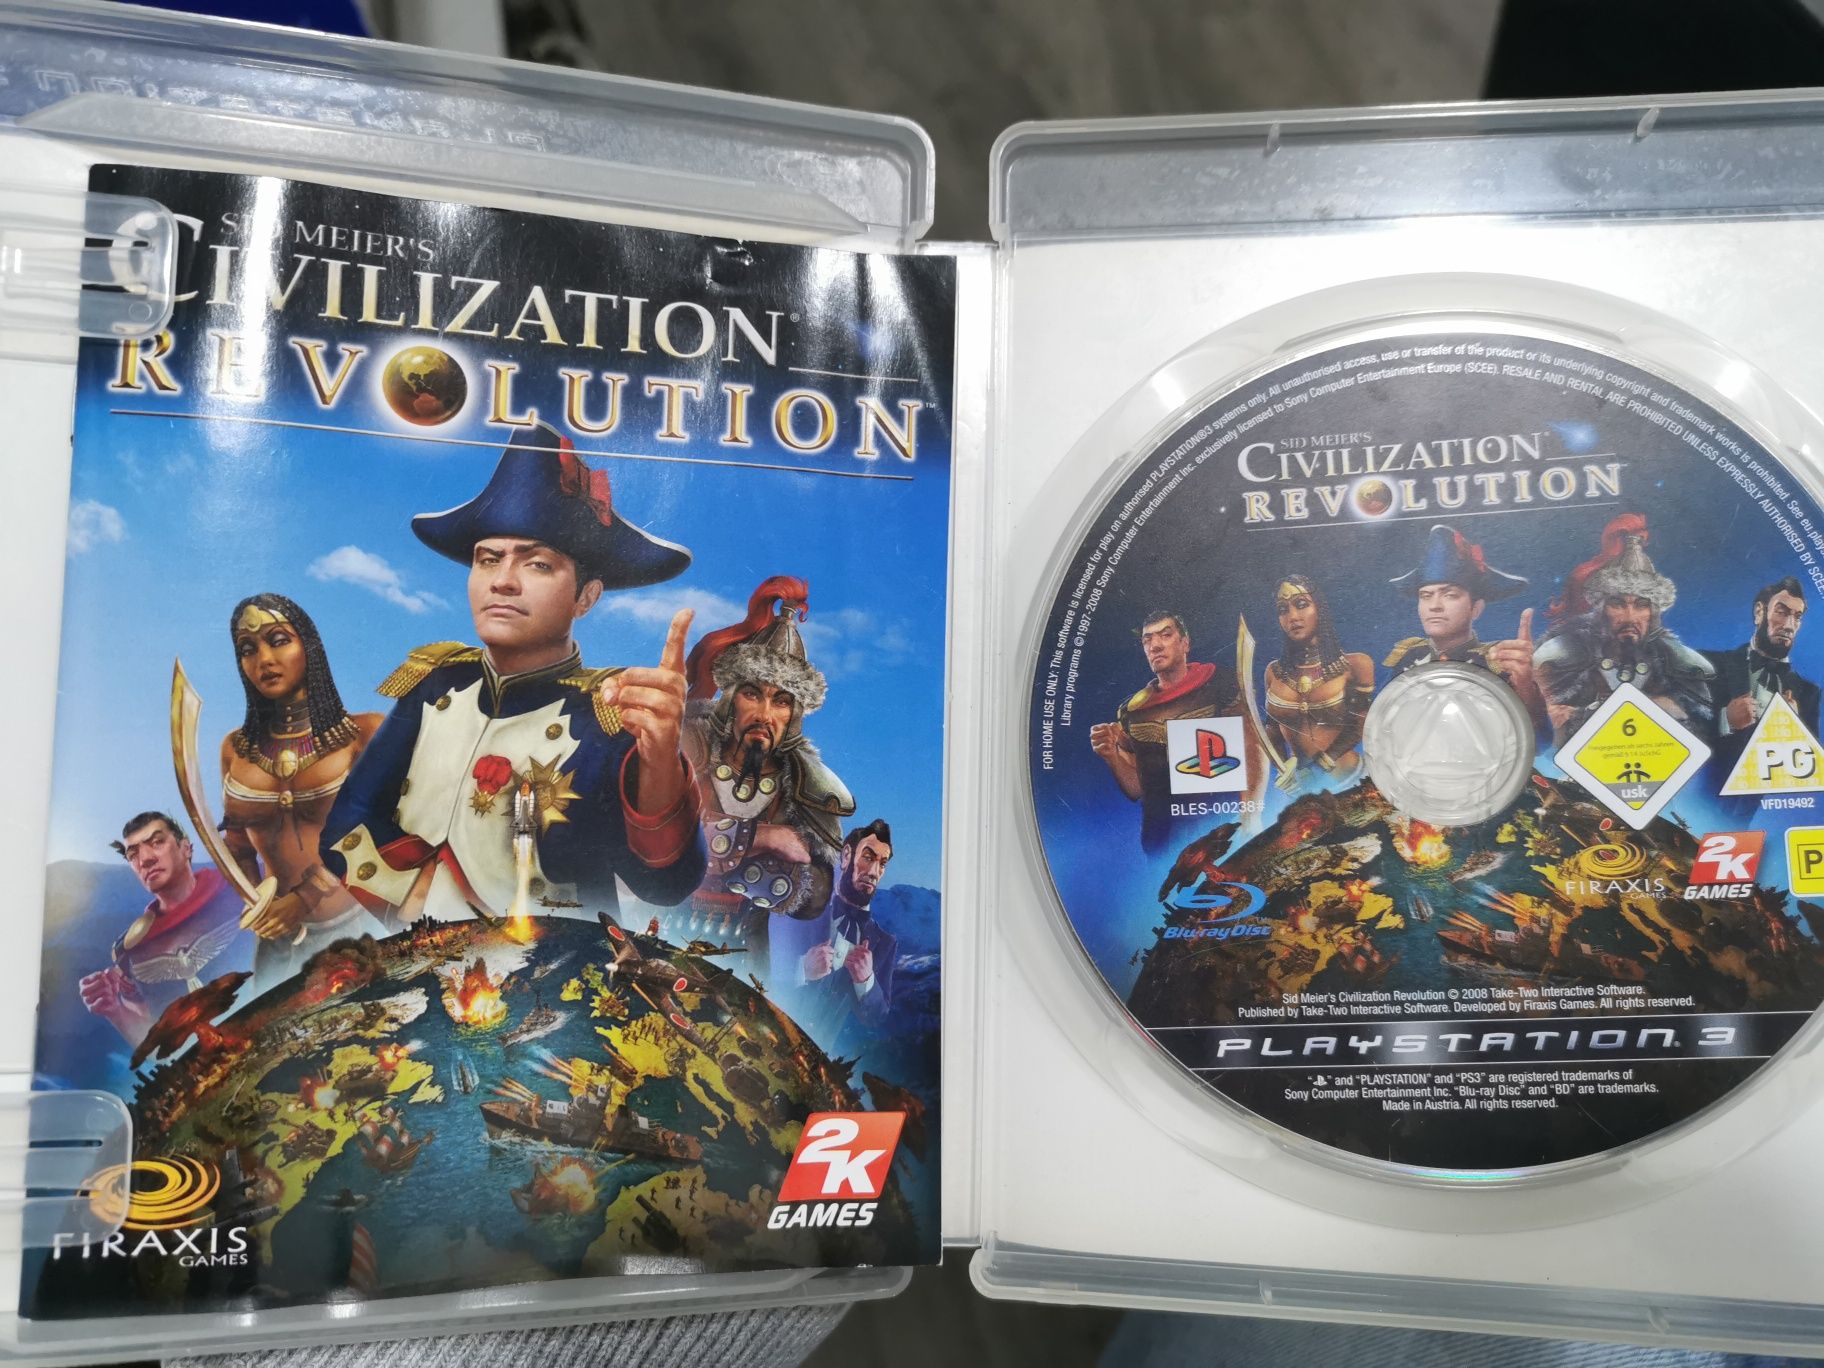 Civilization revolution, Playstation 3

Envio por correio com valor ac